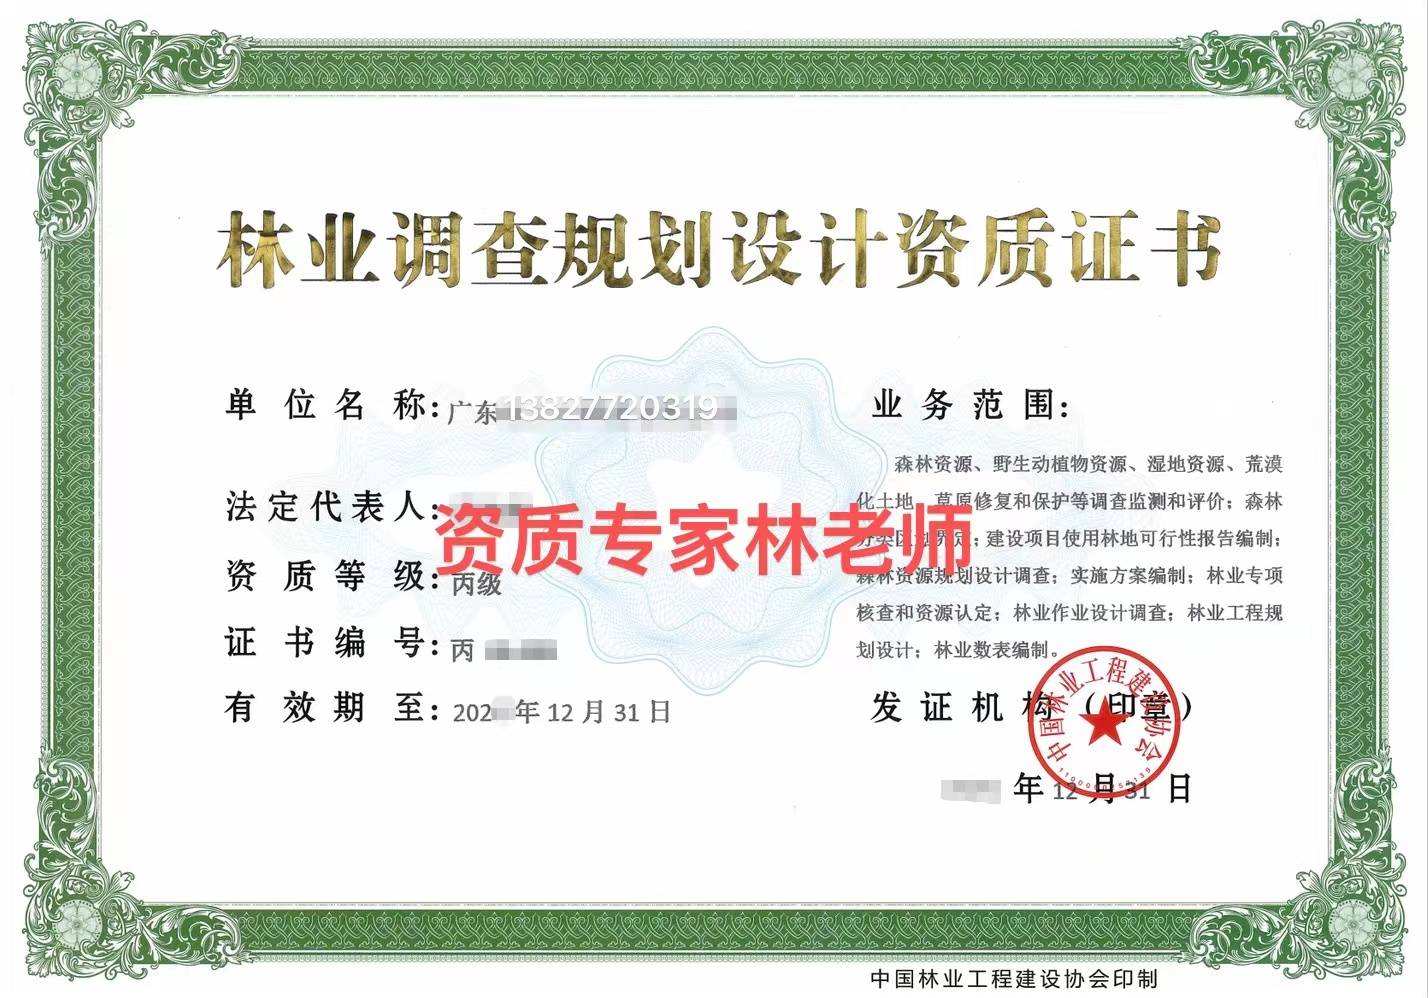 了解《中国林业工程建设协会》最新发布中国林业调查规划设计资质标准要求